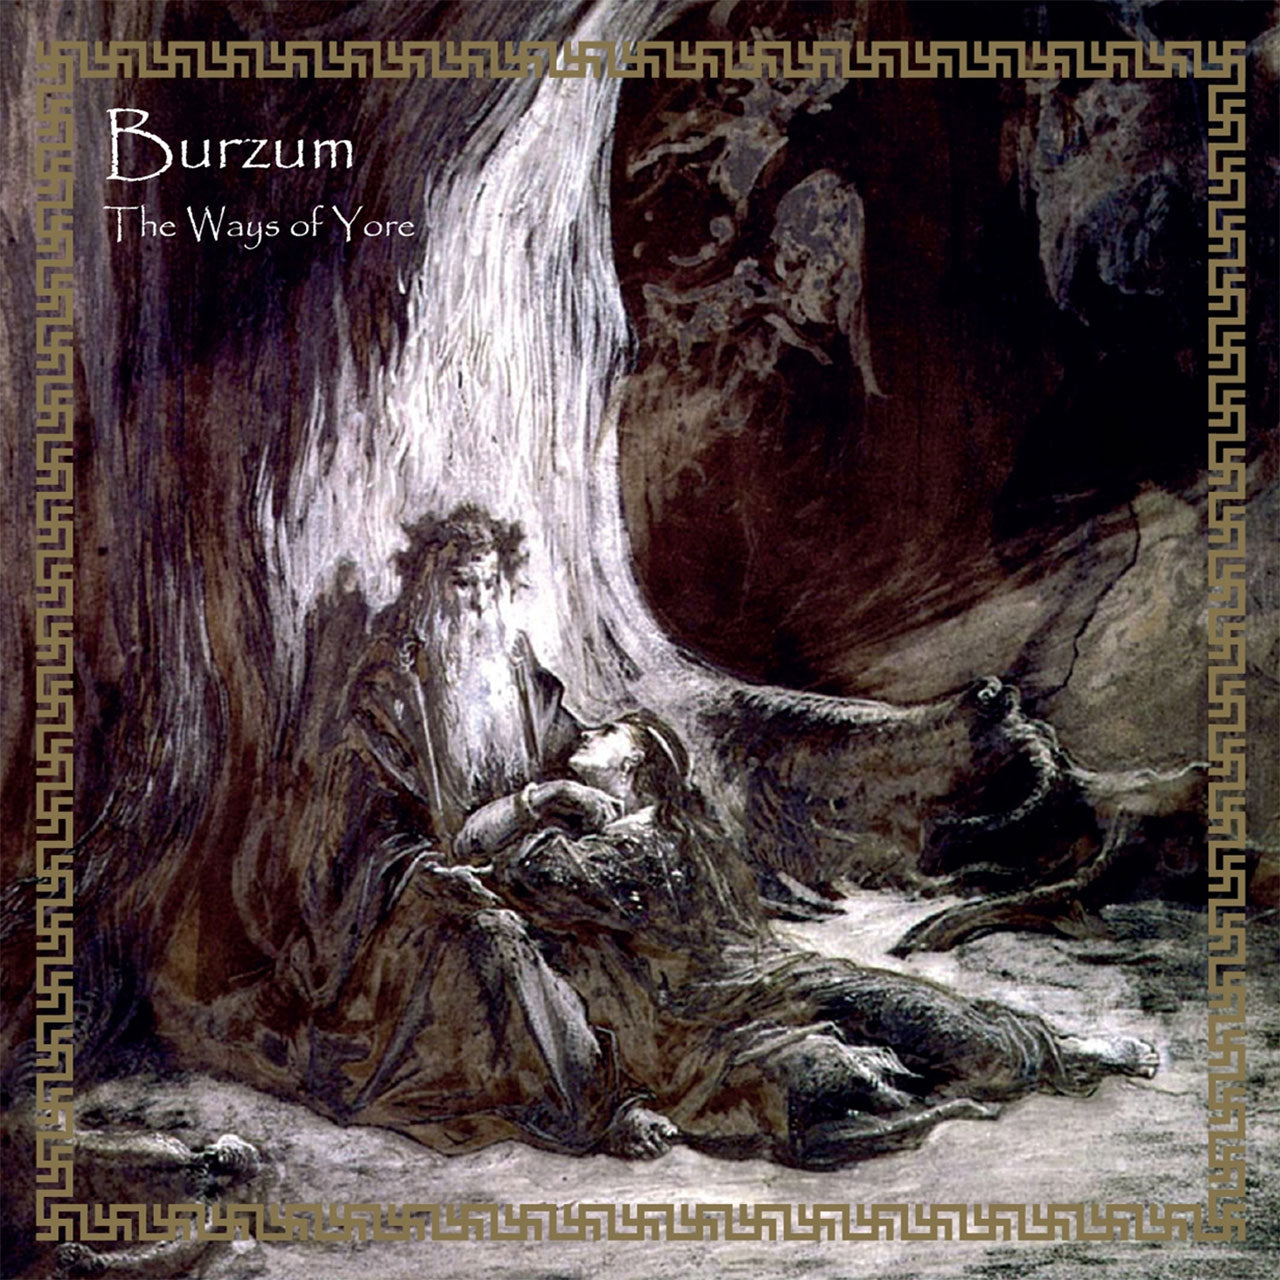 Burzum - The Ways of Yore (CD)